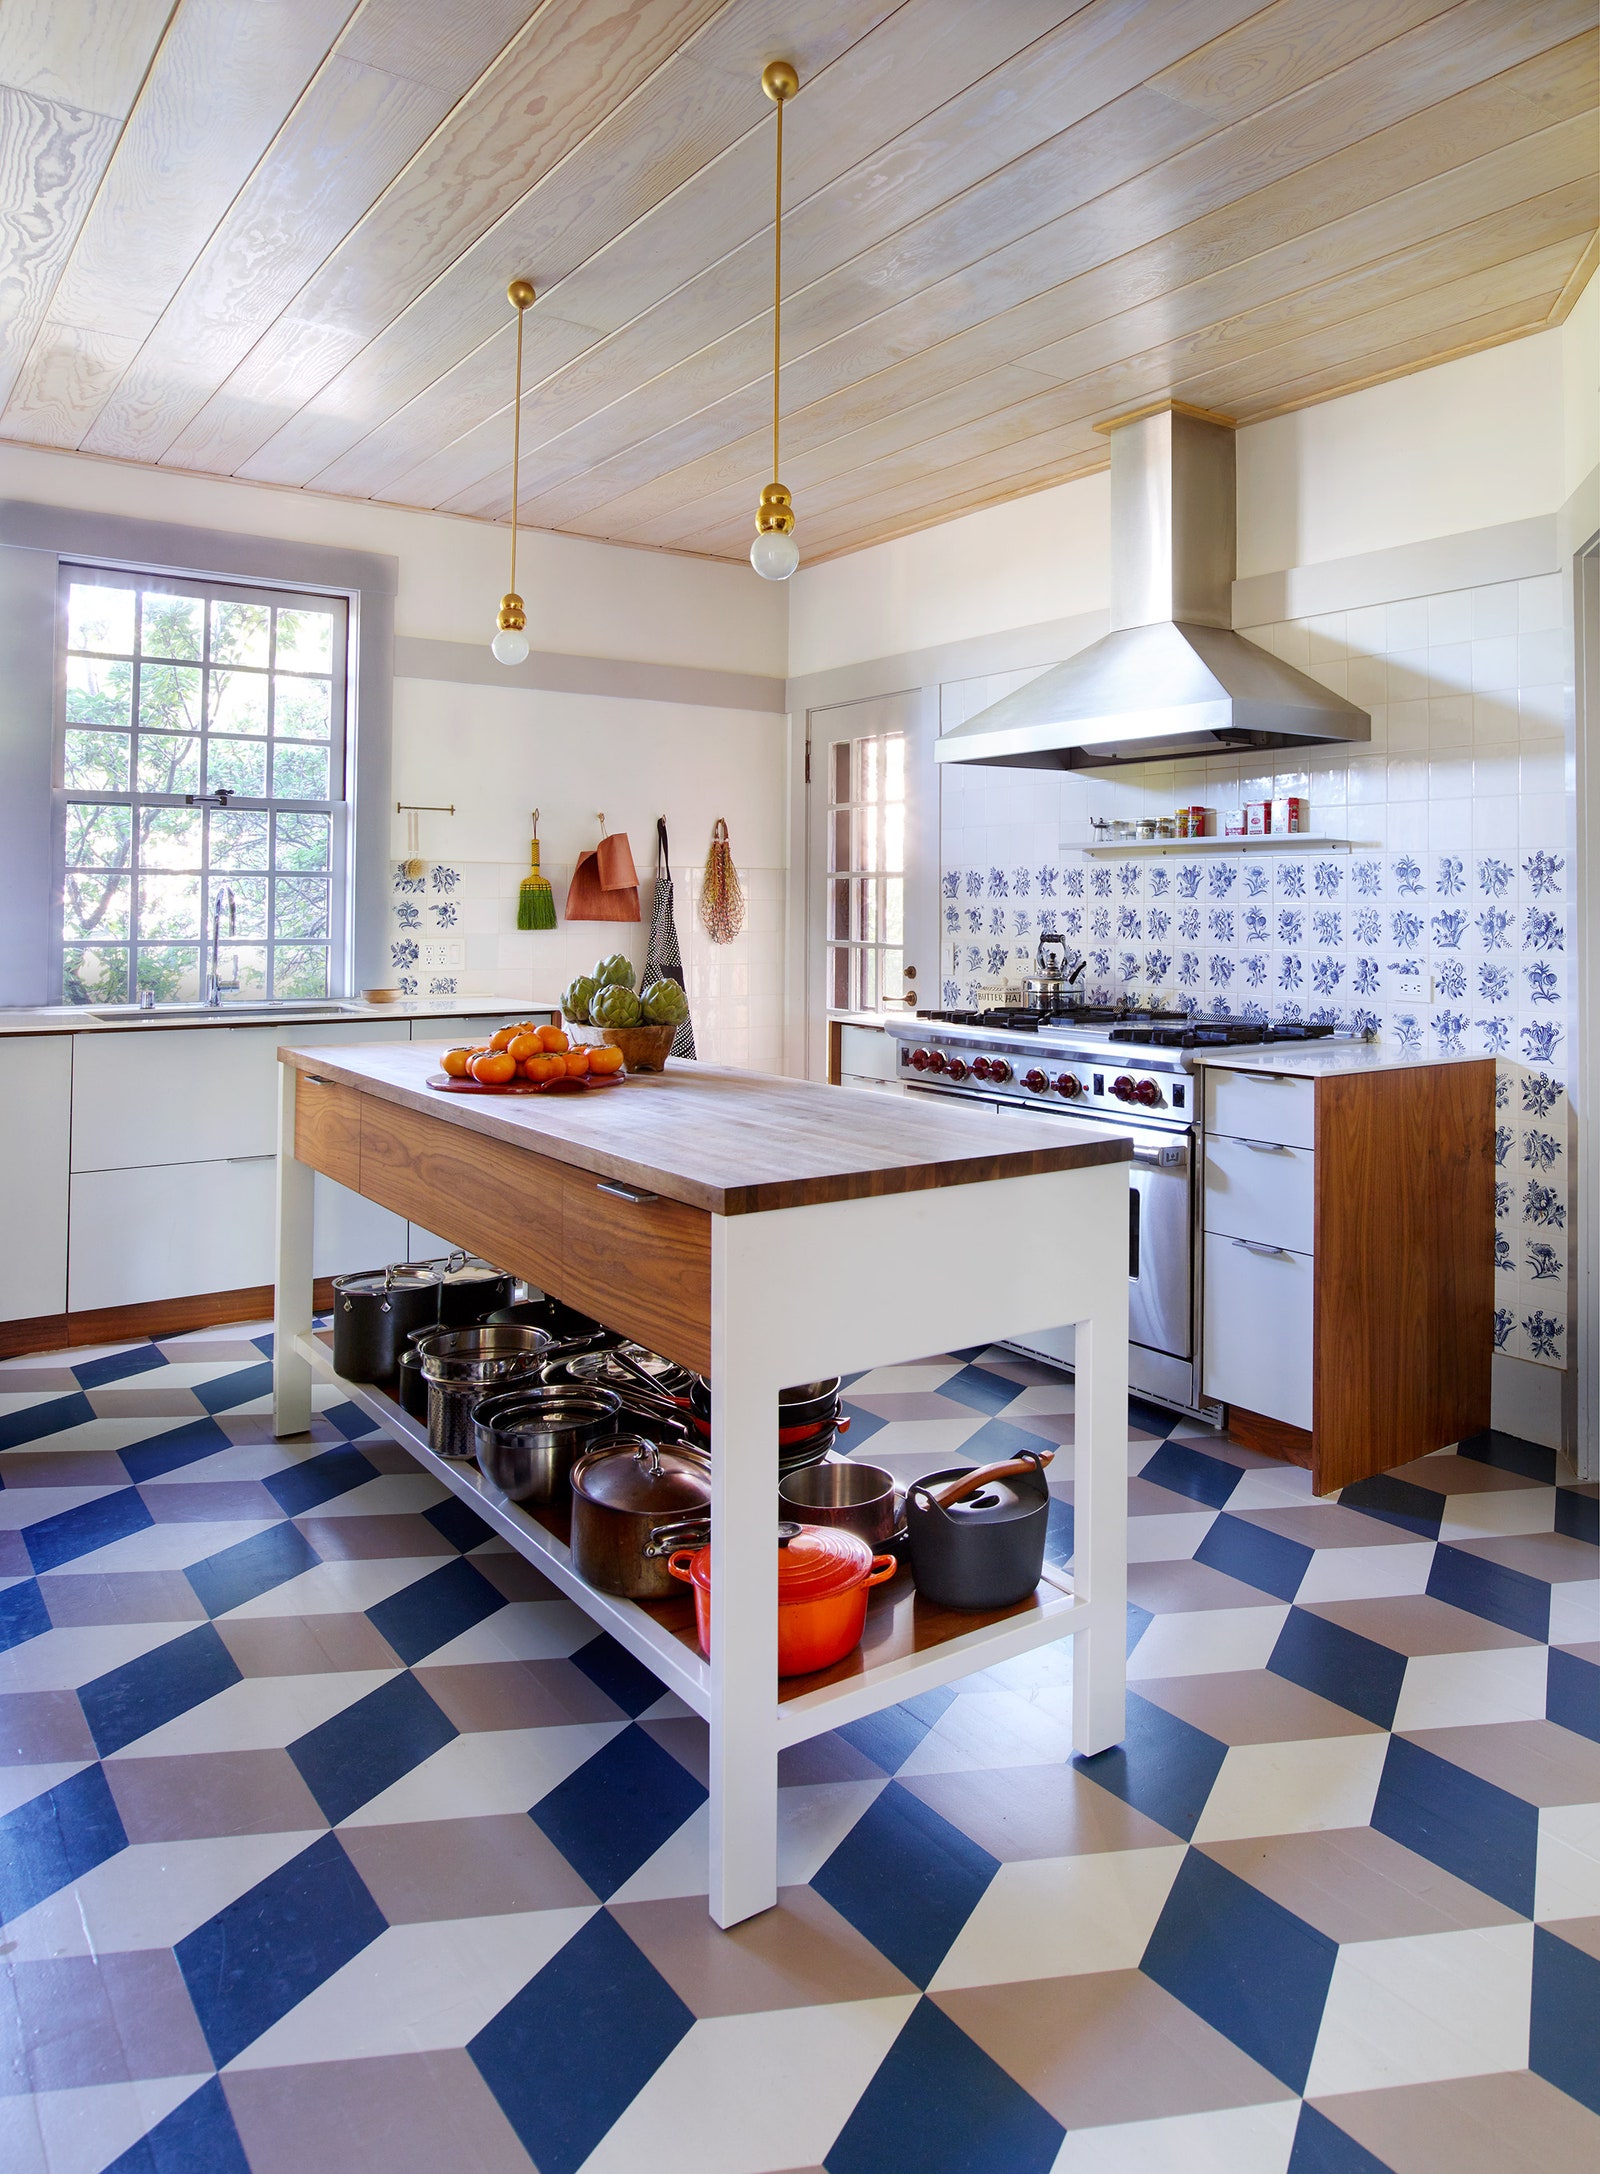 Геометричный узор на полу нарисованный. Шкафы и кухонный остров Henrybuilt светильники Michael Anastassiades.